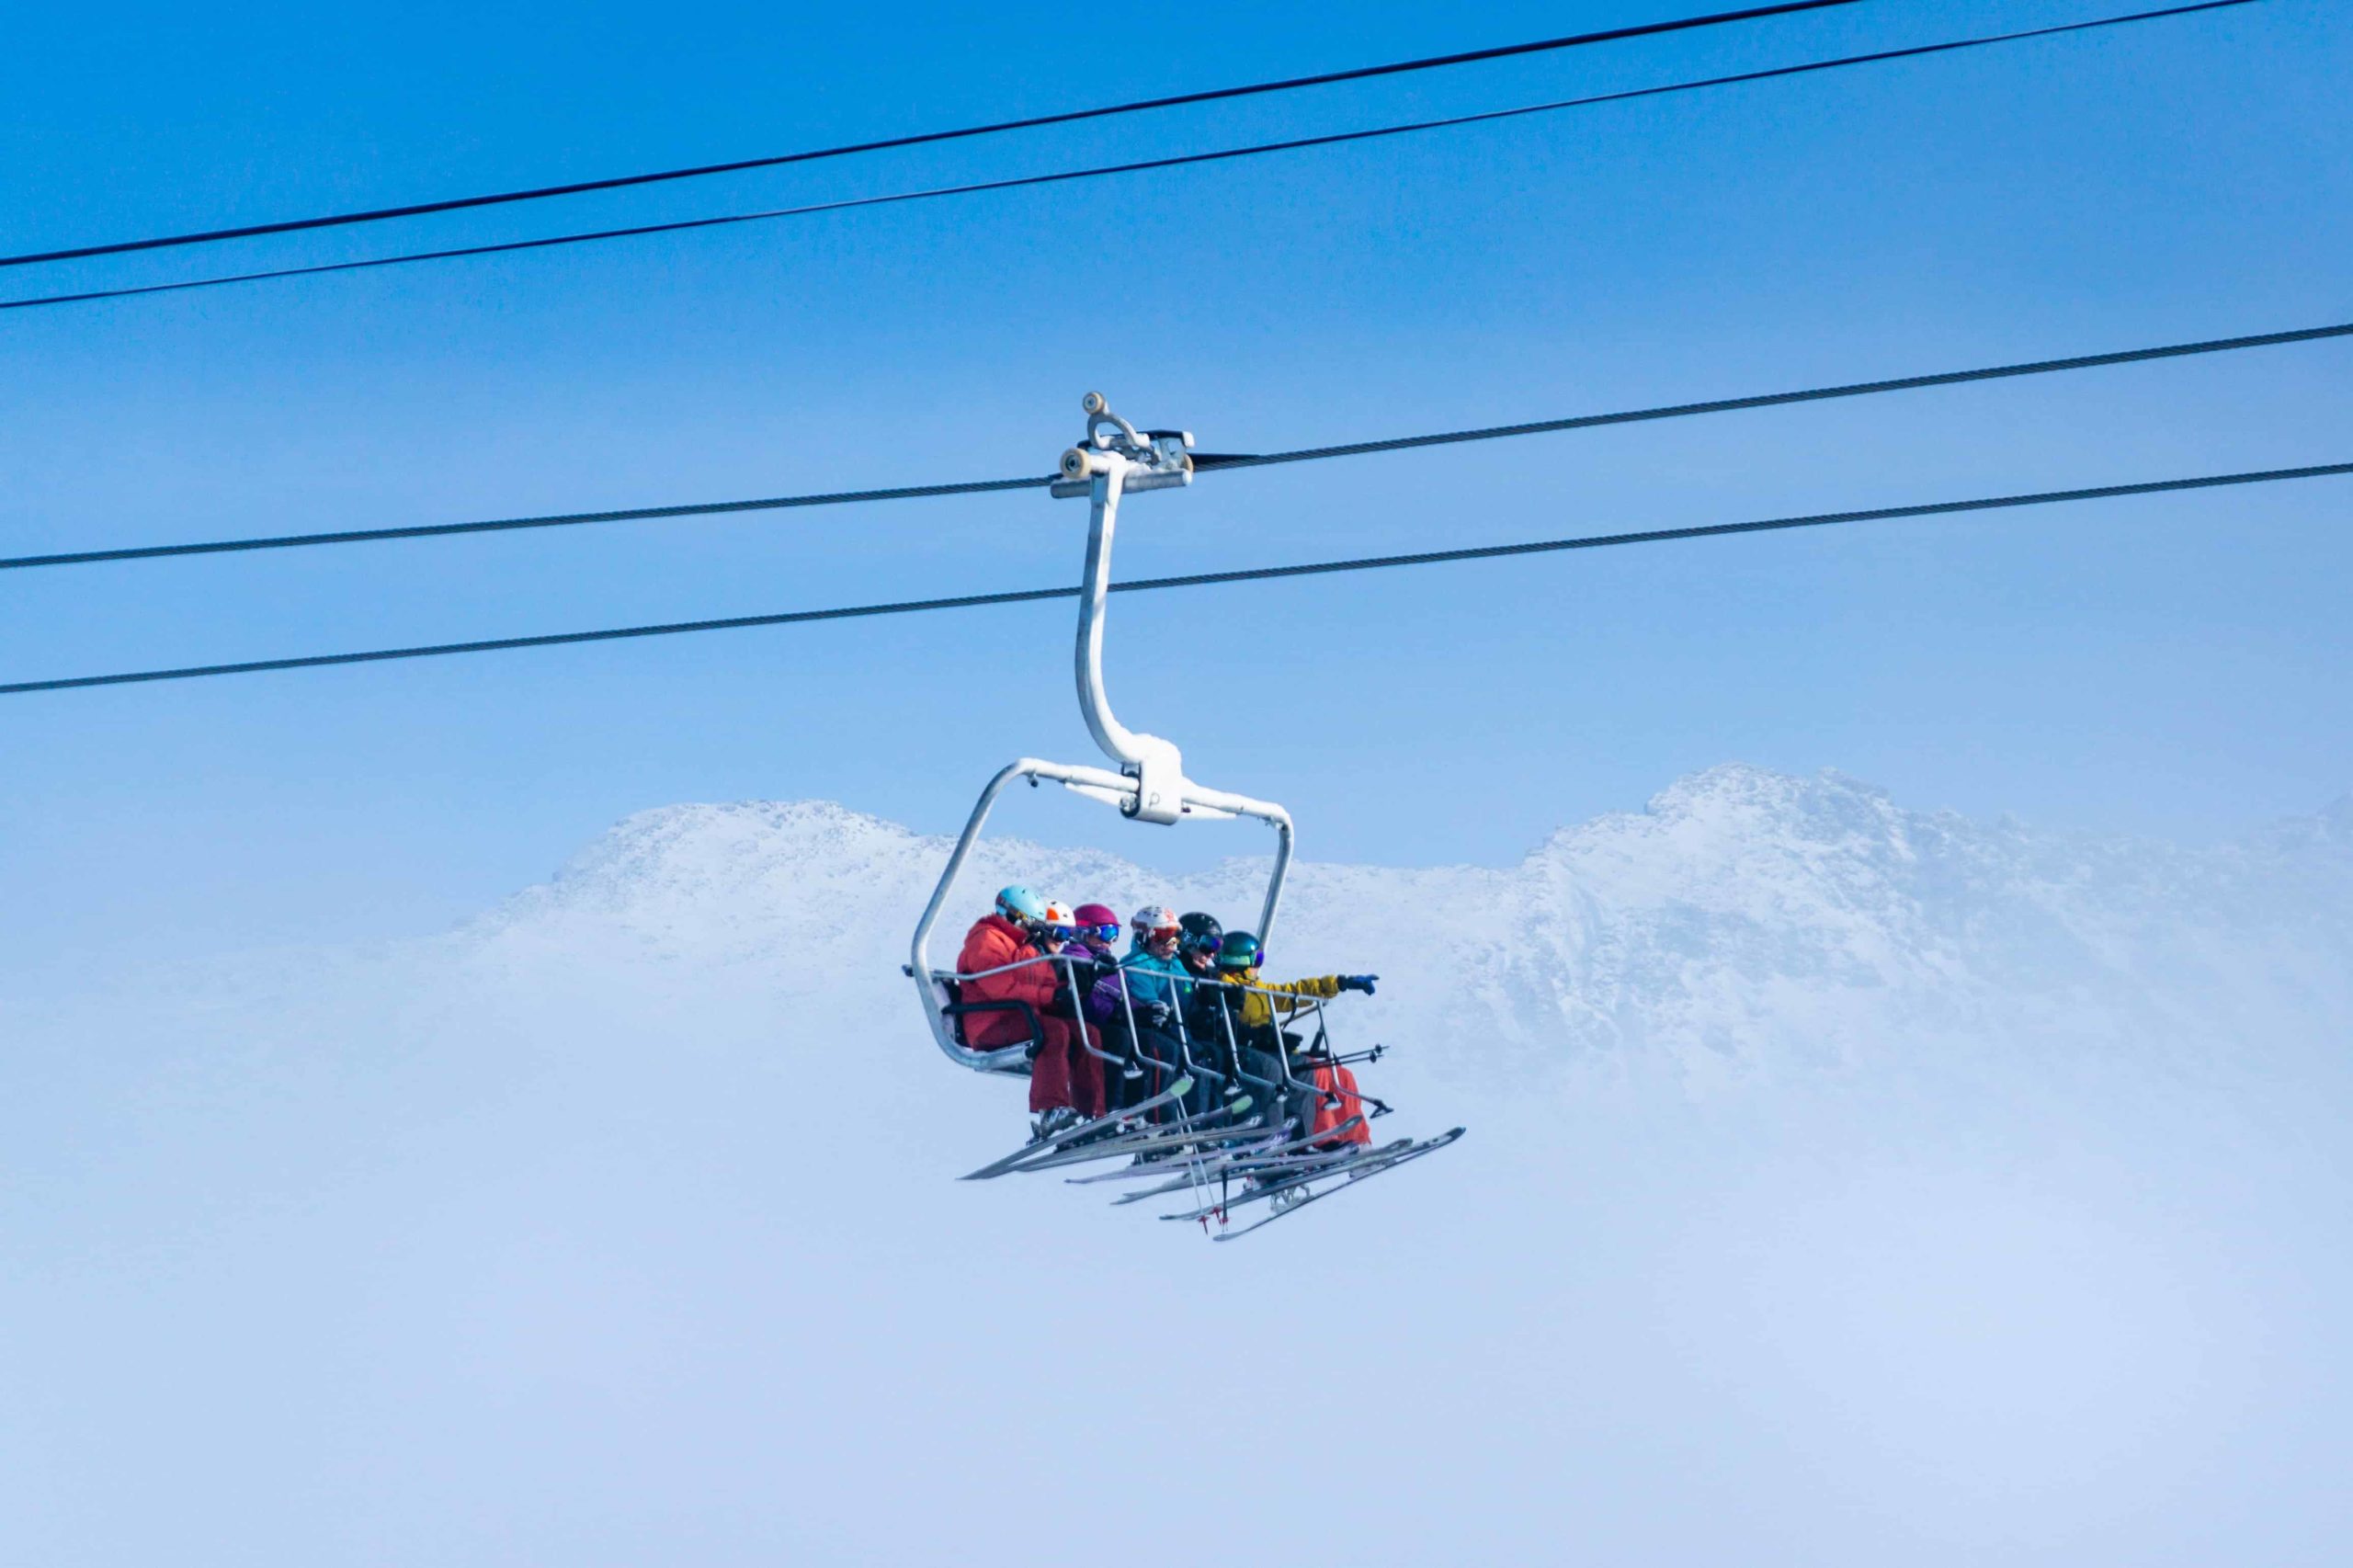 Skiers on ski lift